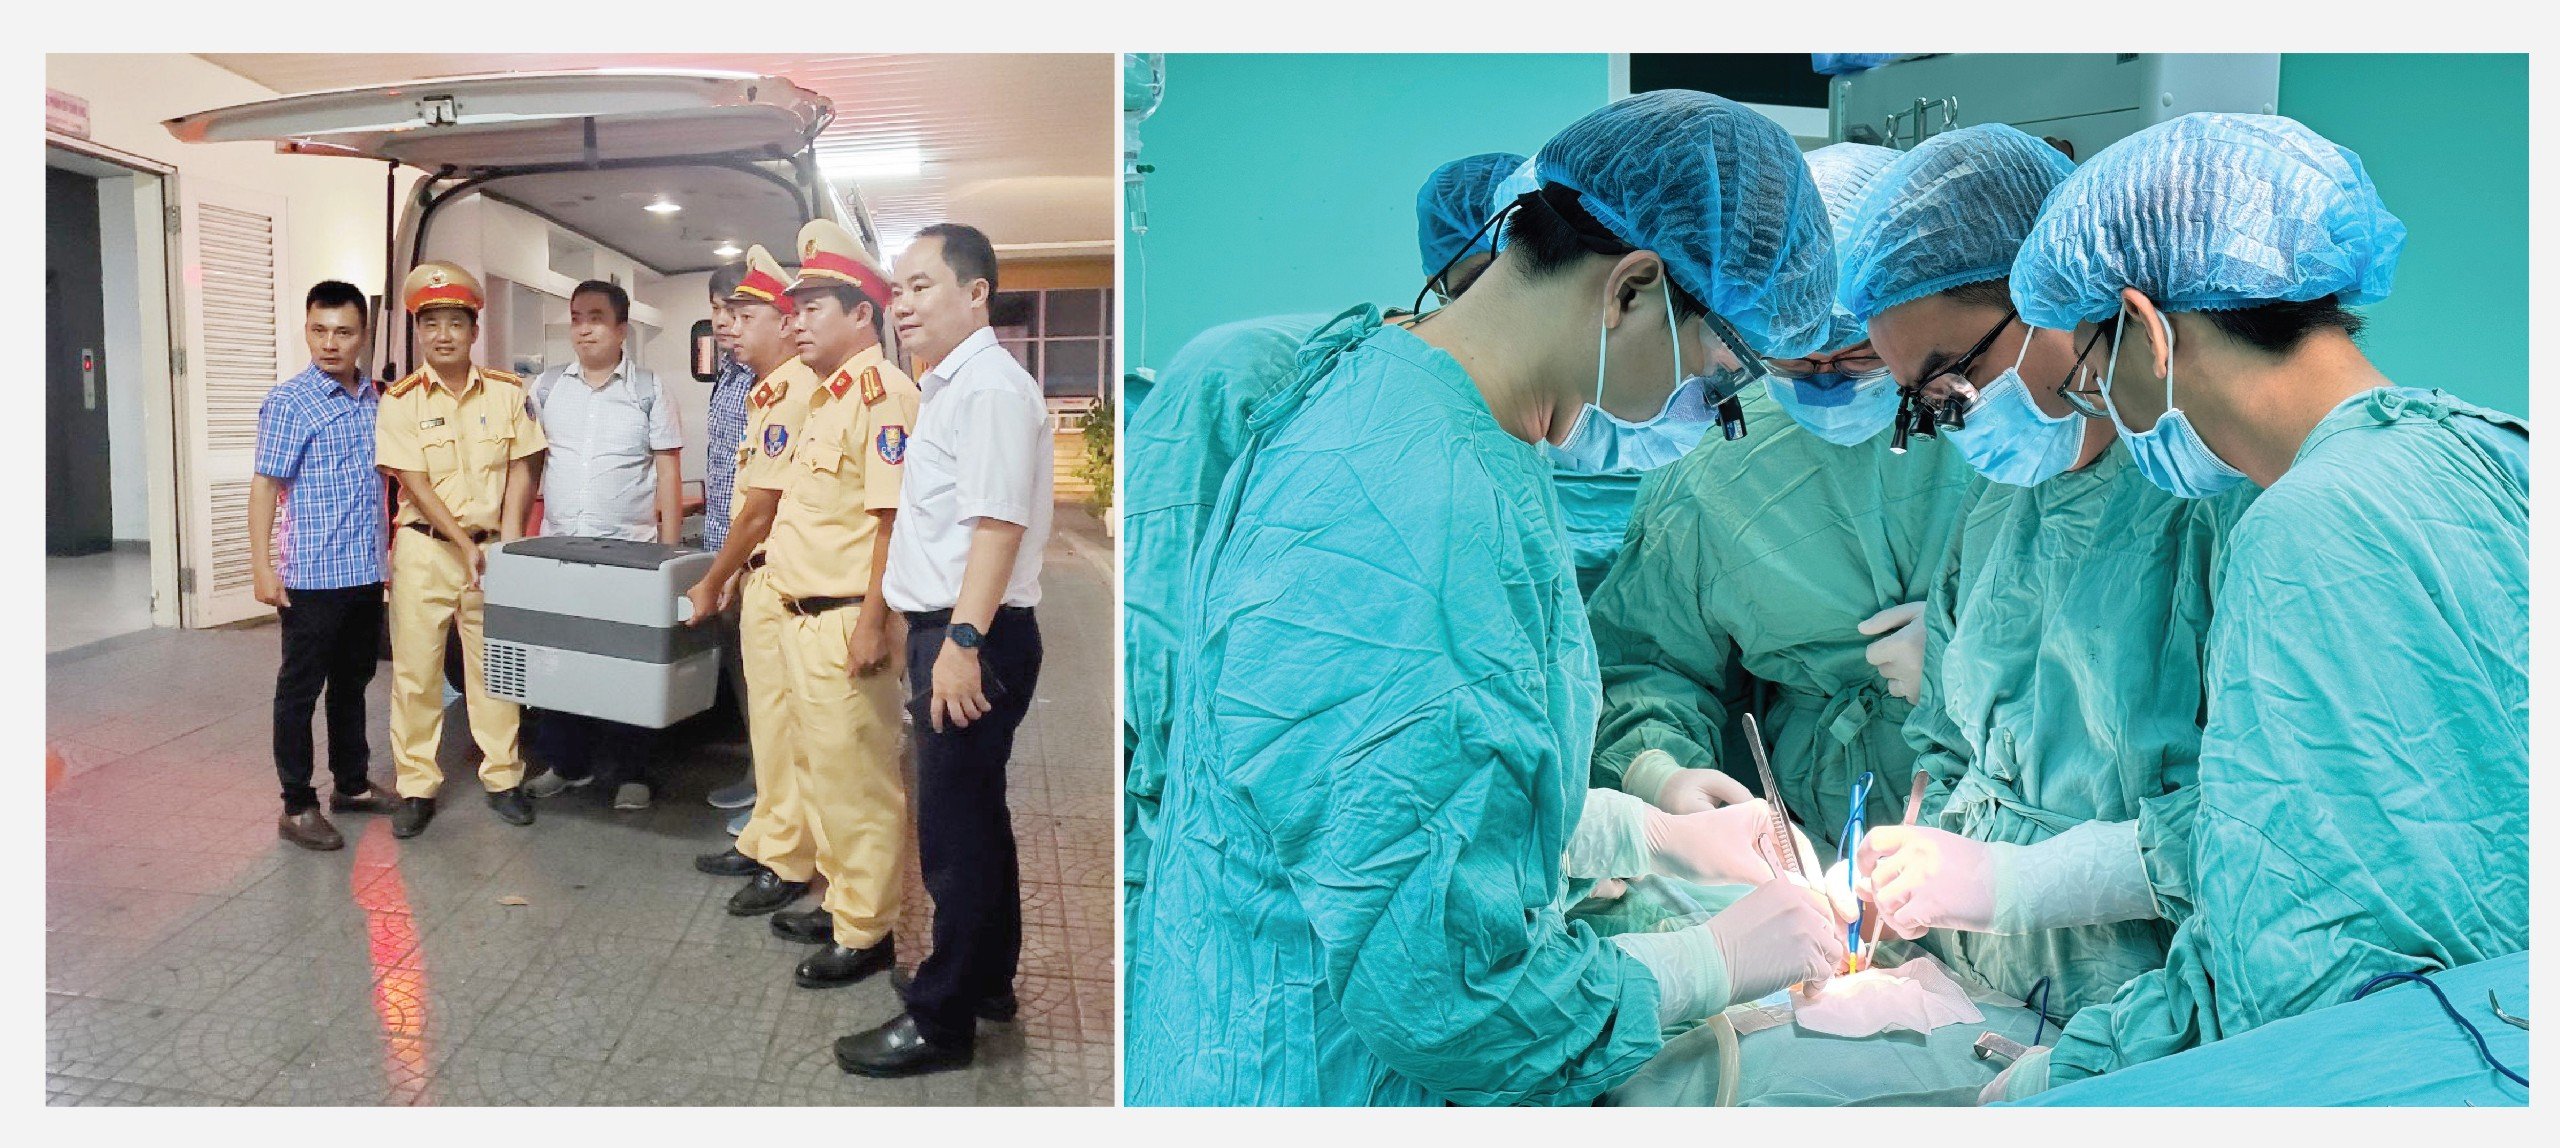 Hình ảnh đoàn ghép tạng về đến sân bay Huế và thực hiện ca ghép cho người bệnh tại Bệnh viện TW Huế